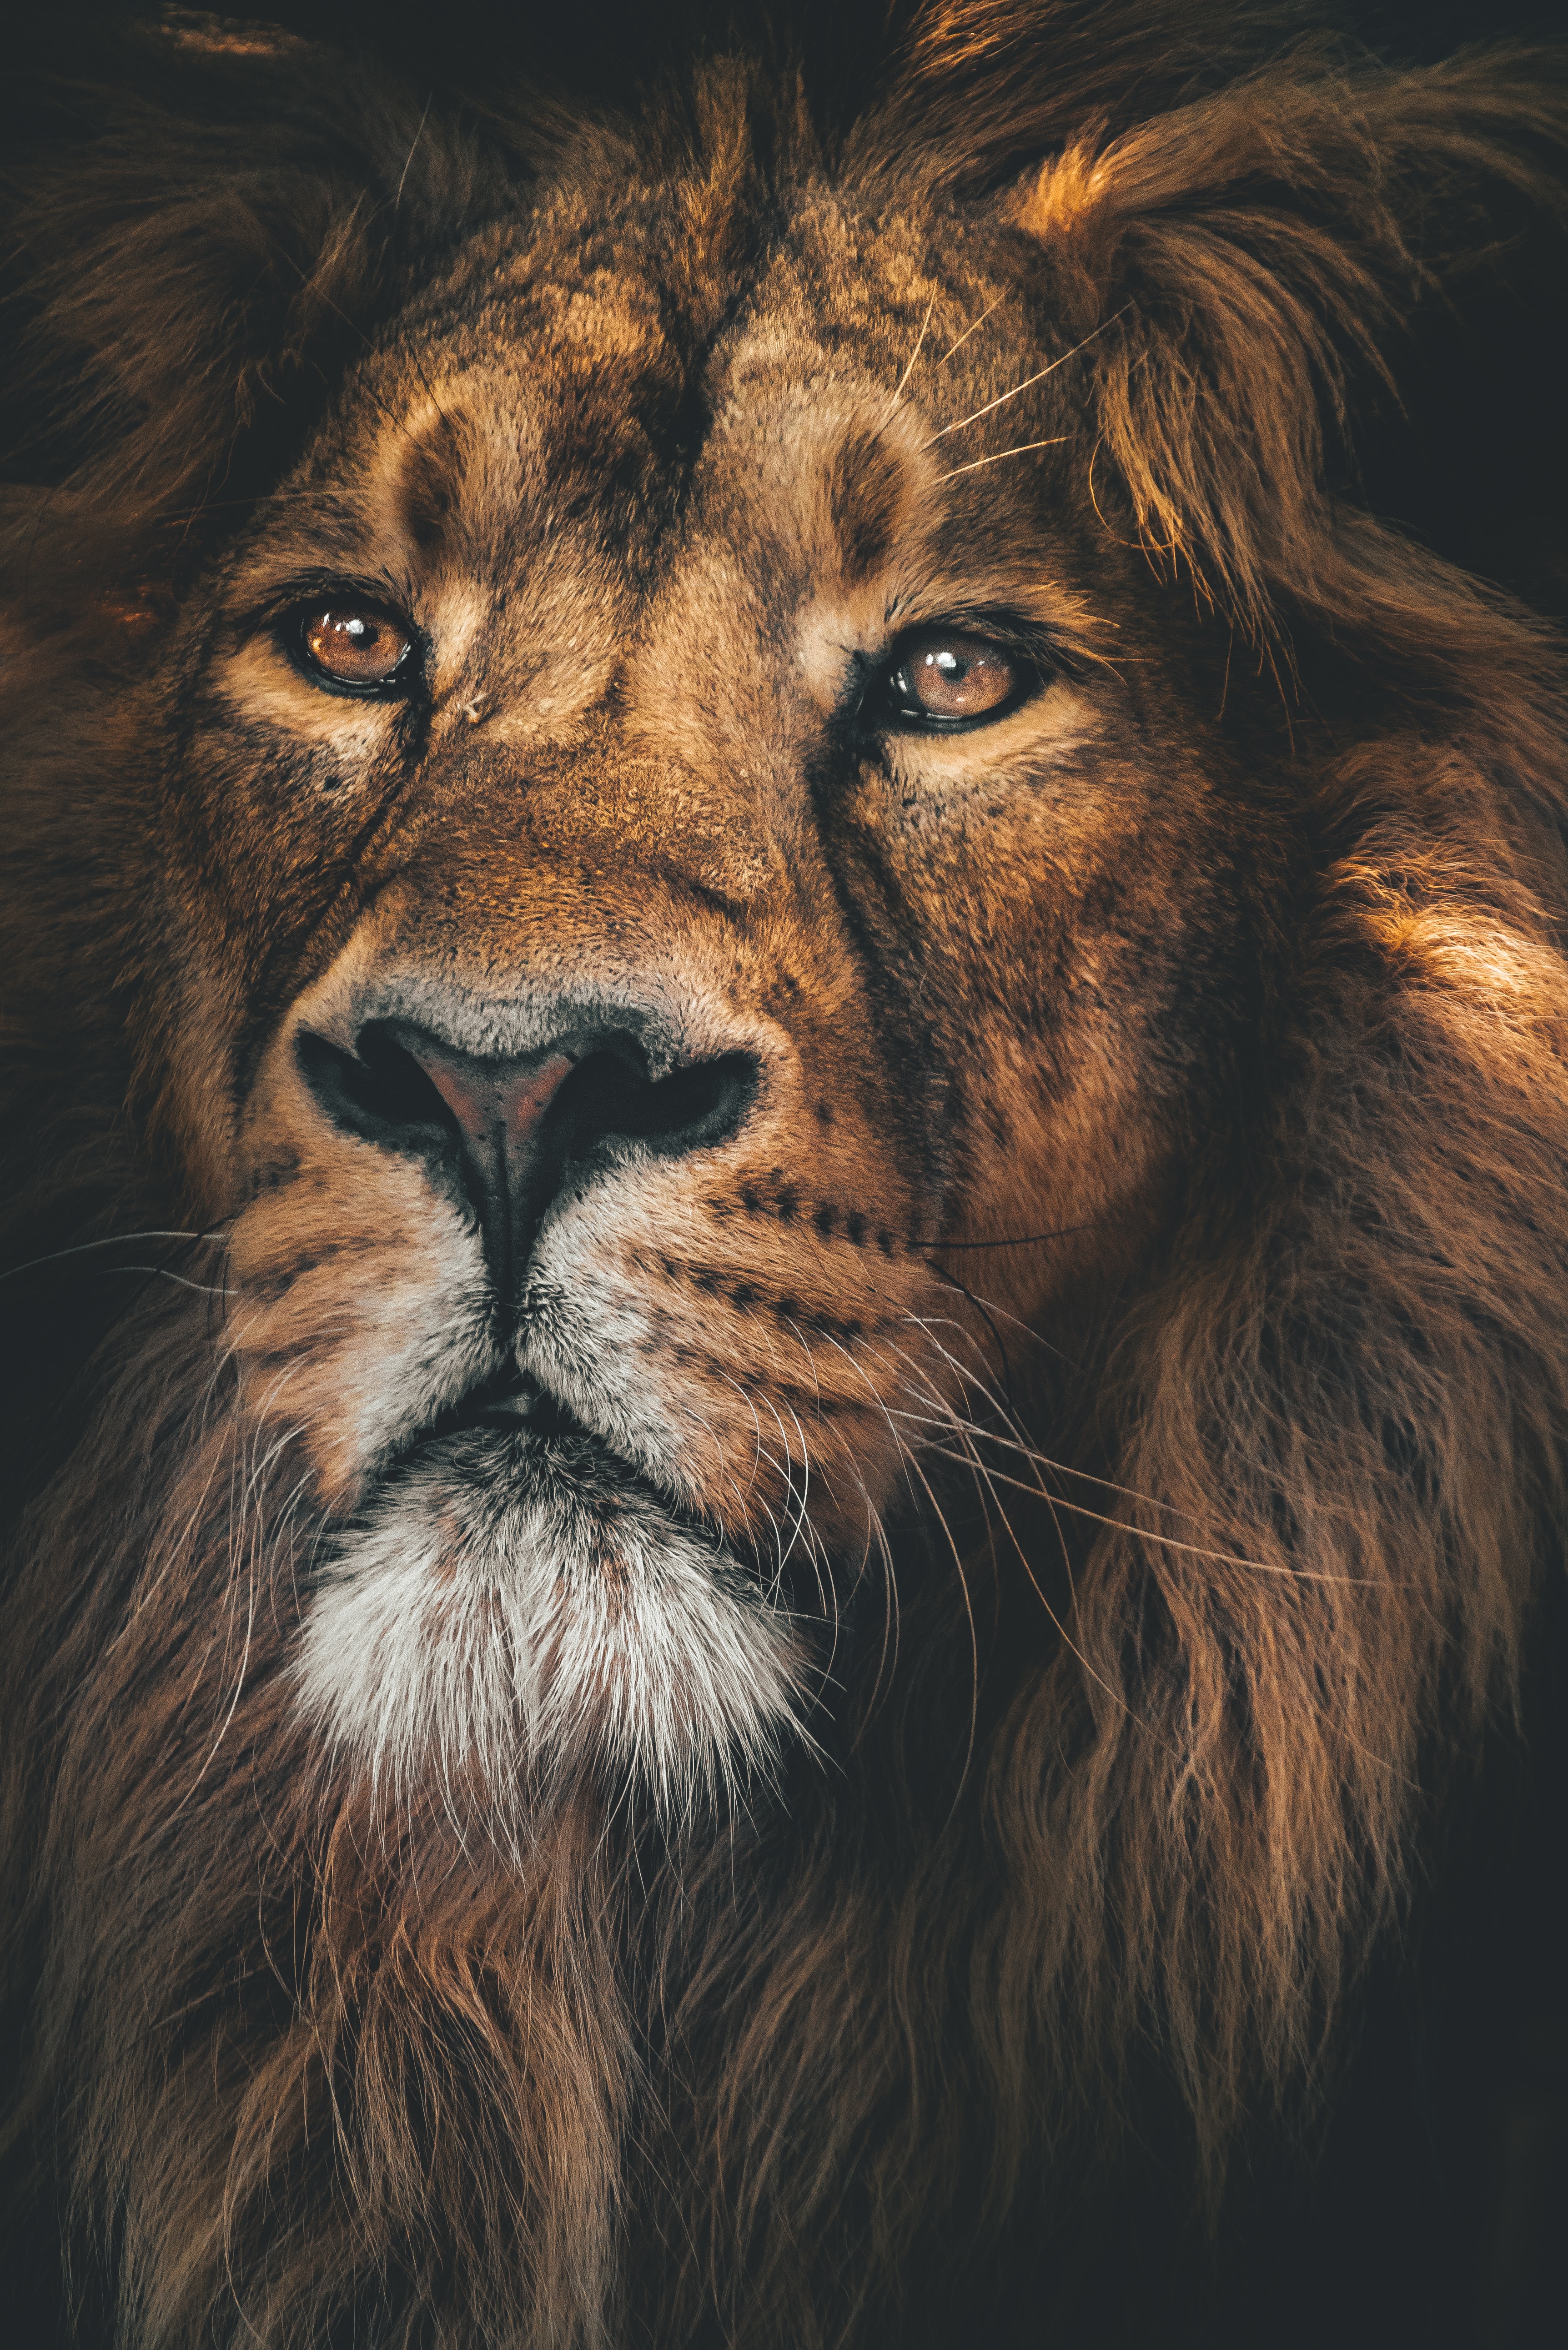 A lion. | Source: Unsplash